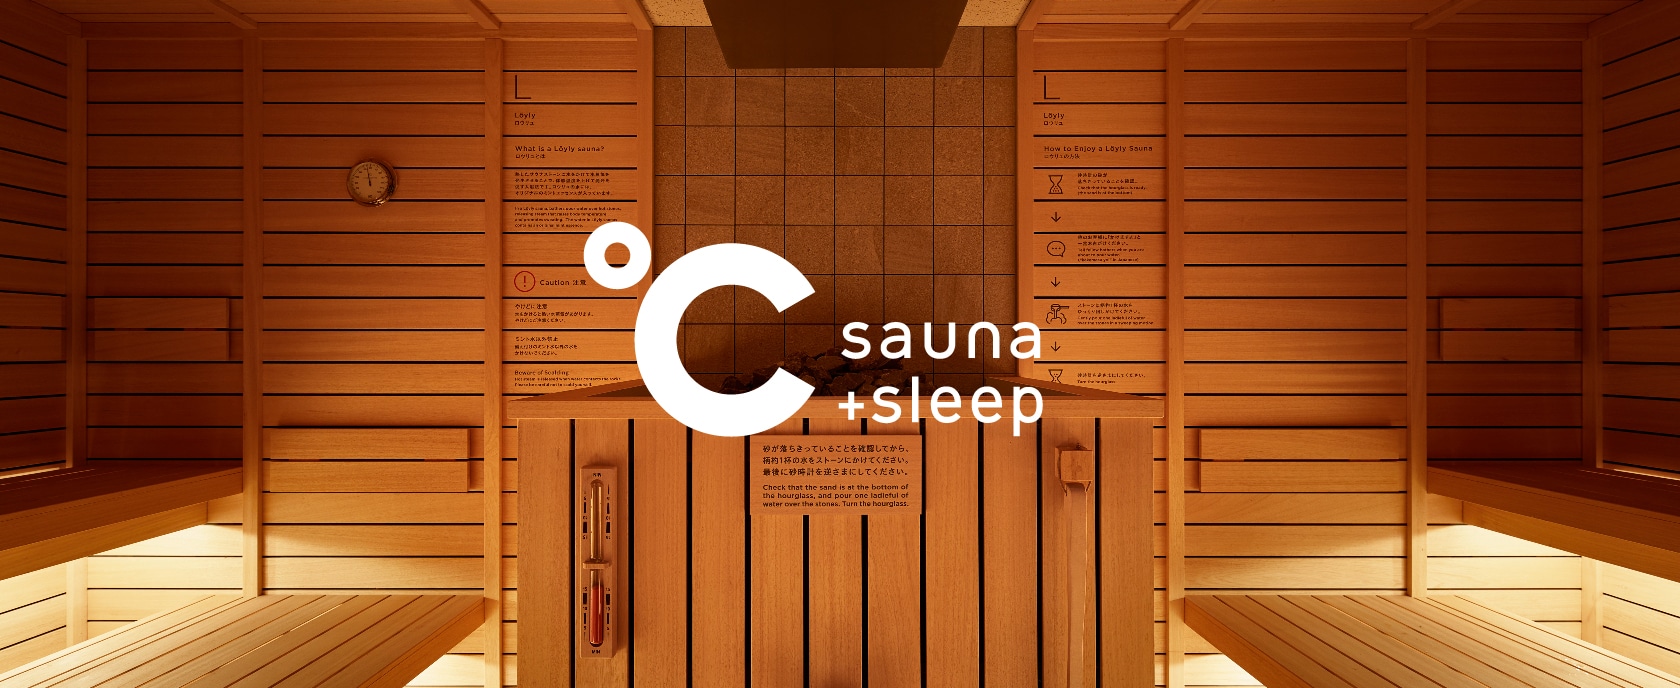 °C sauna+sleep